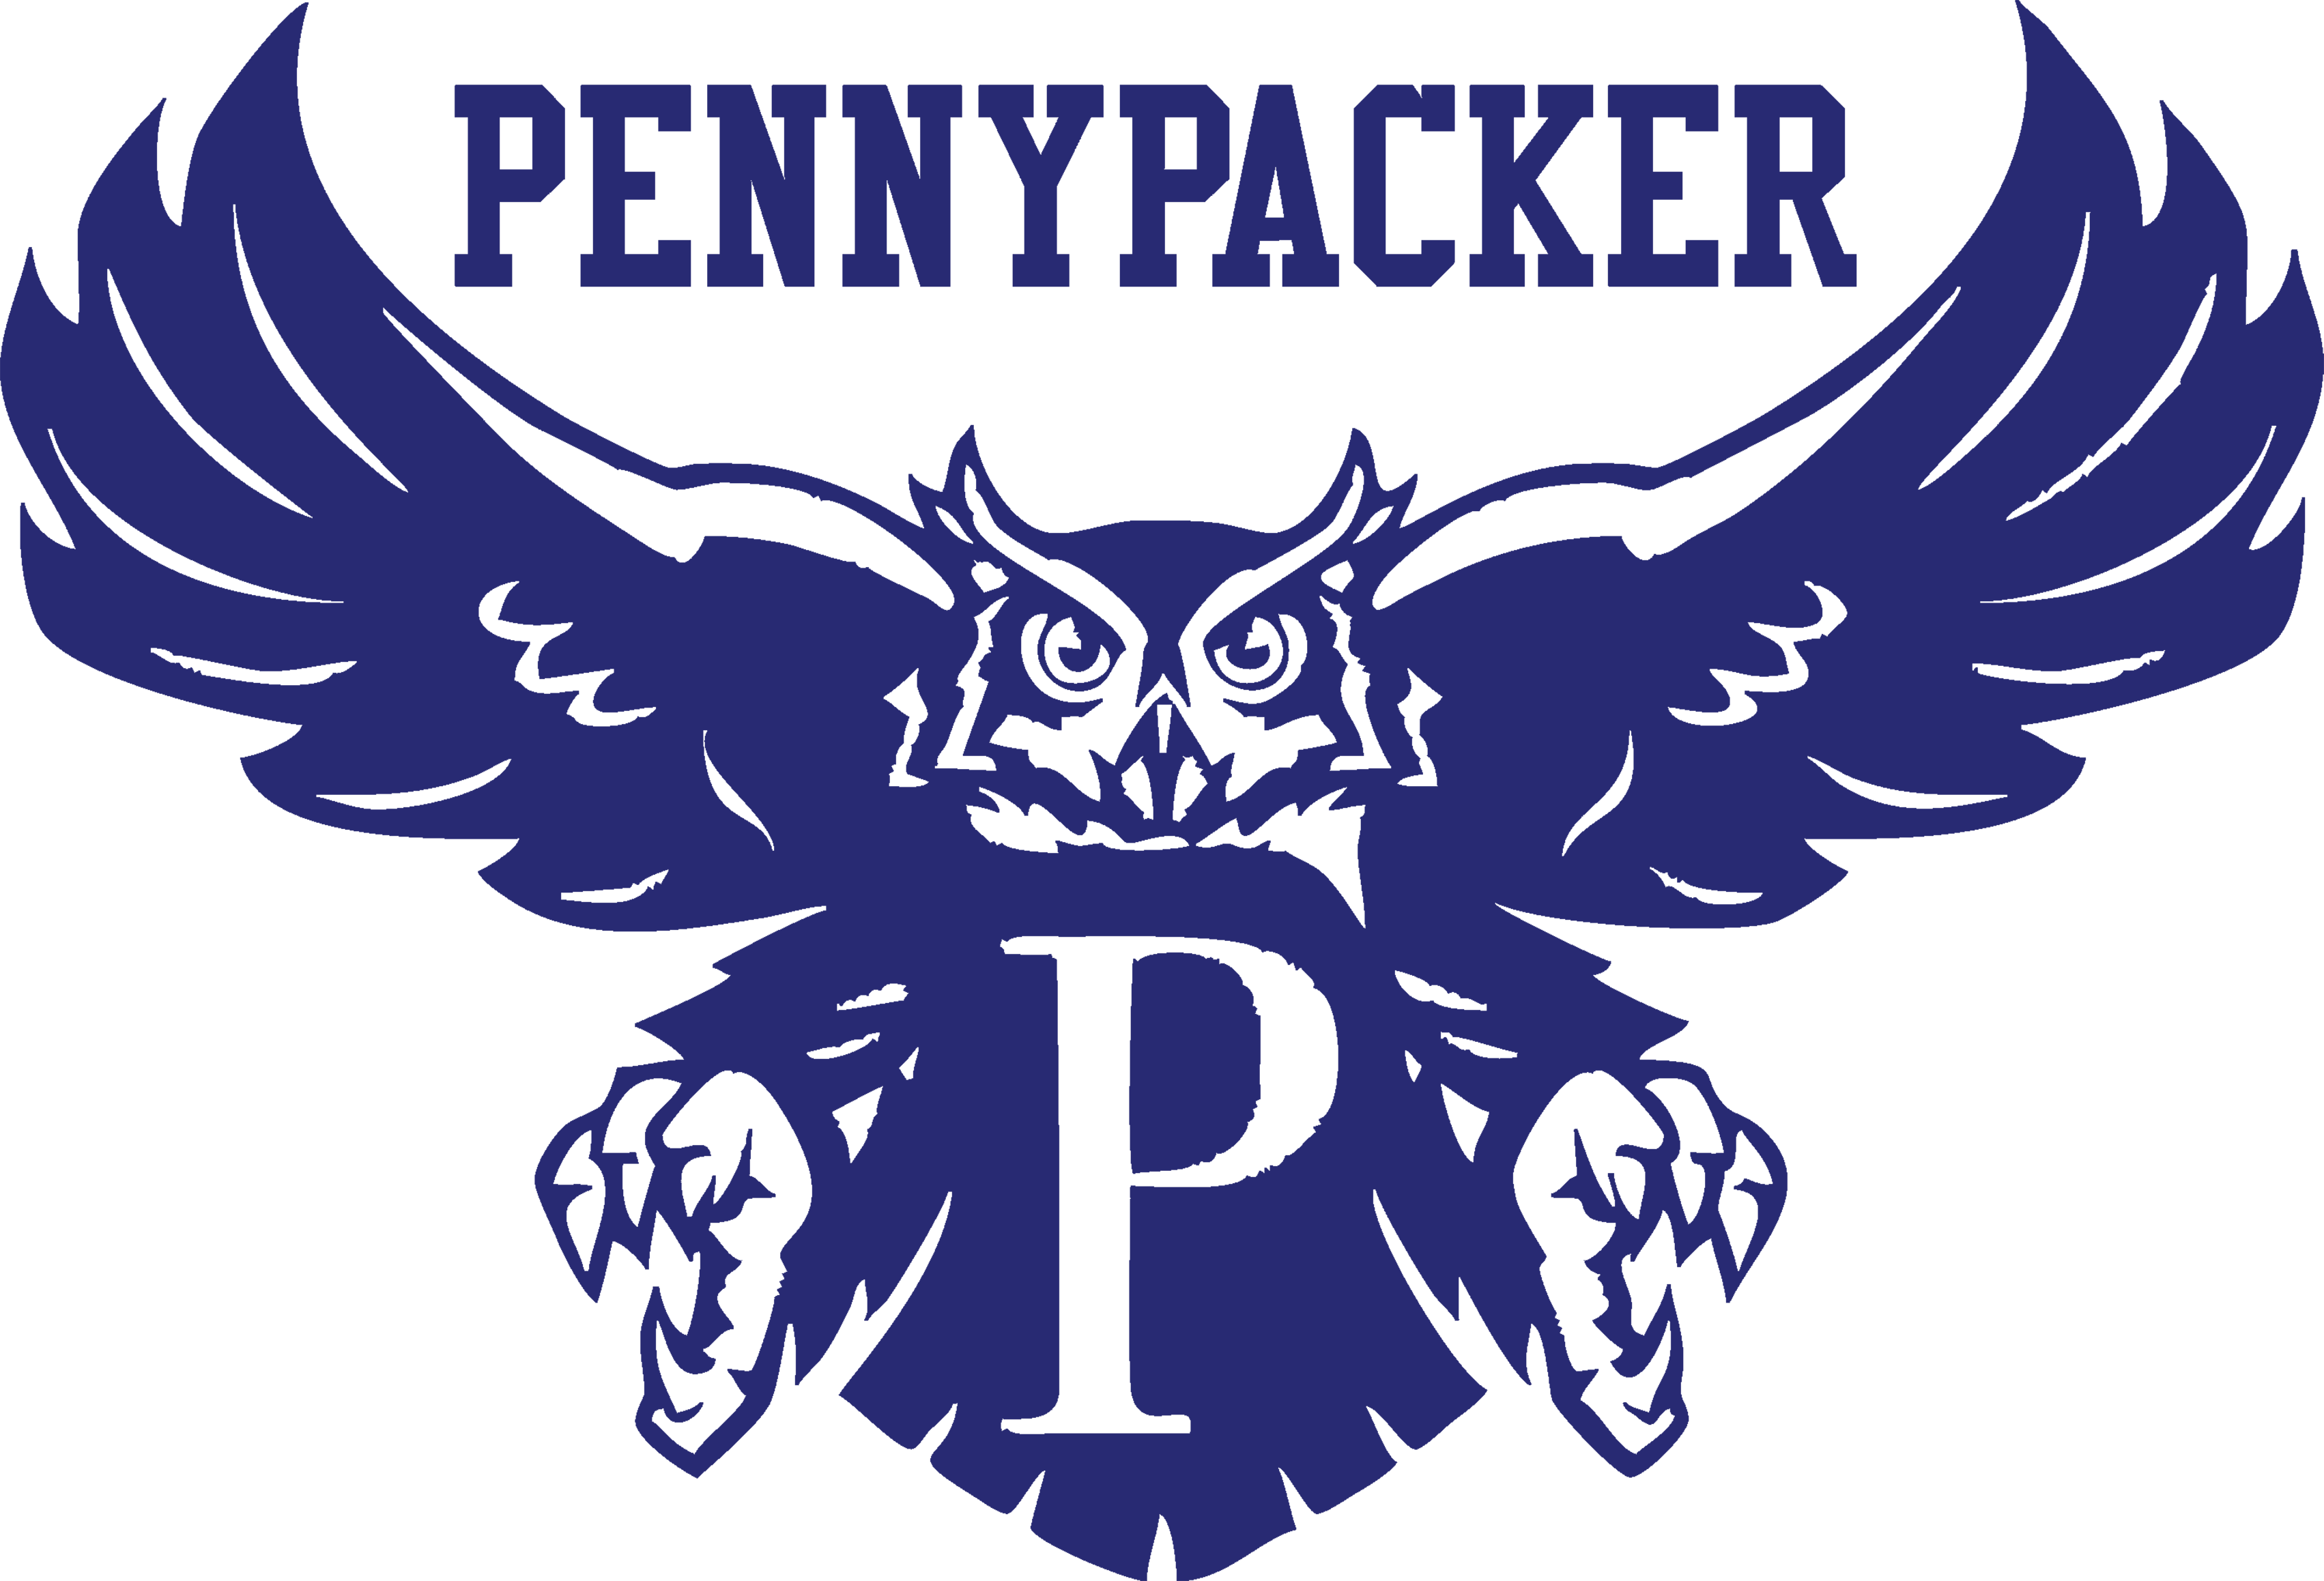 Pennypacker